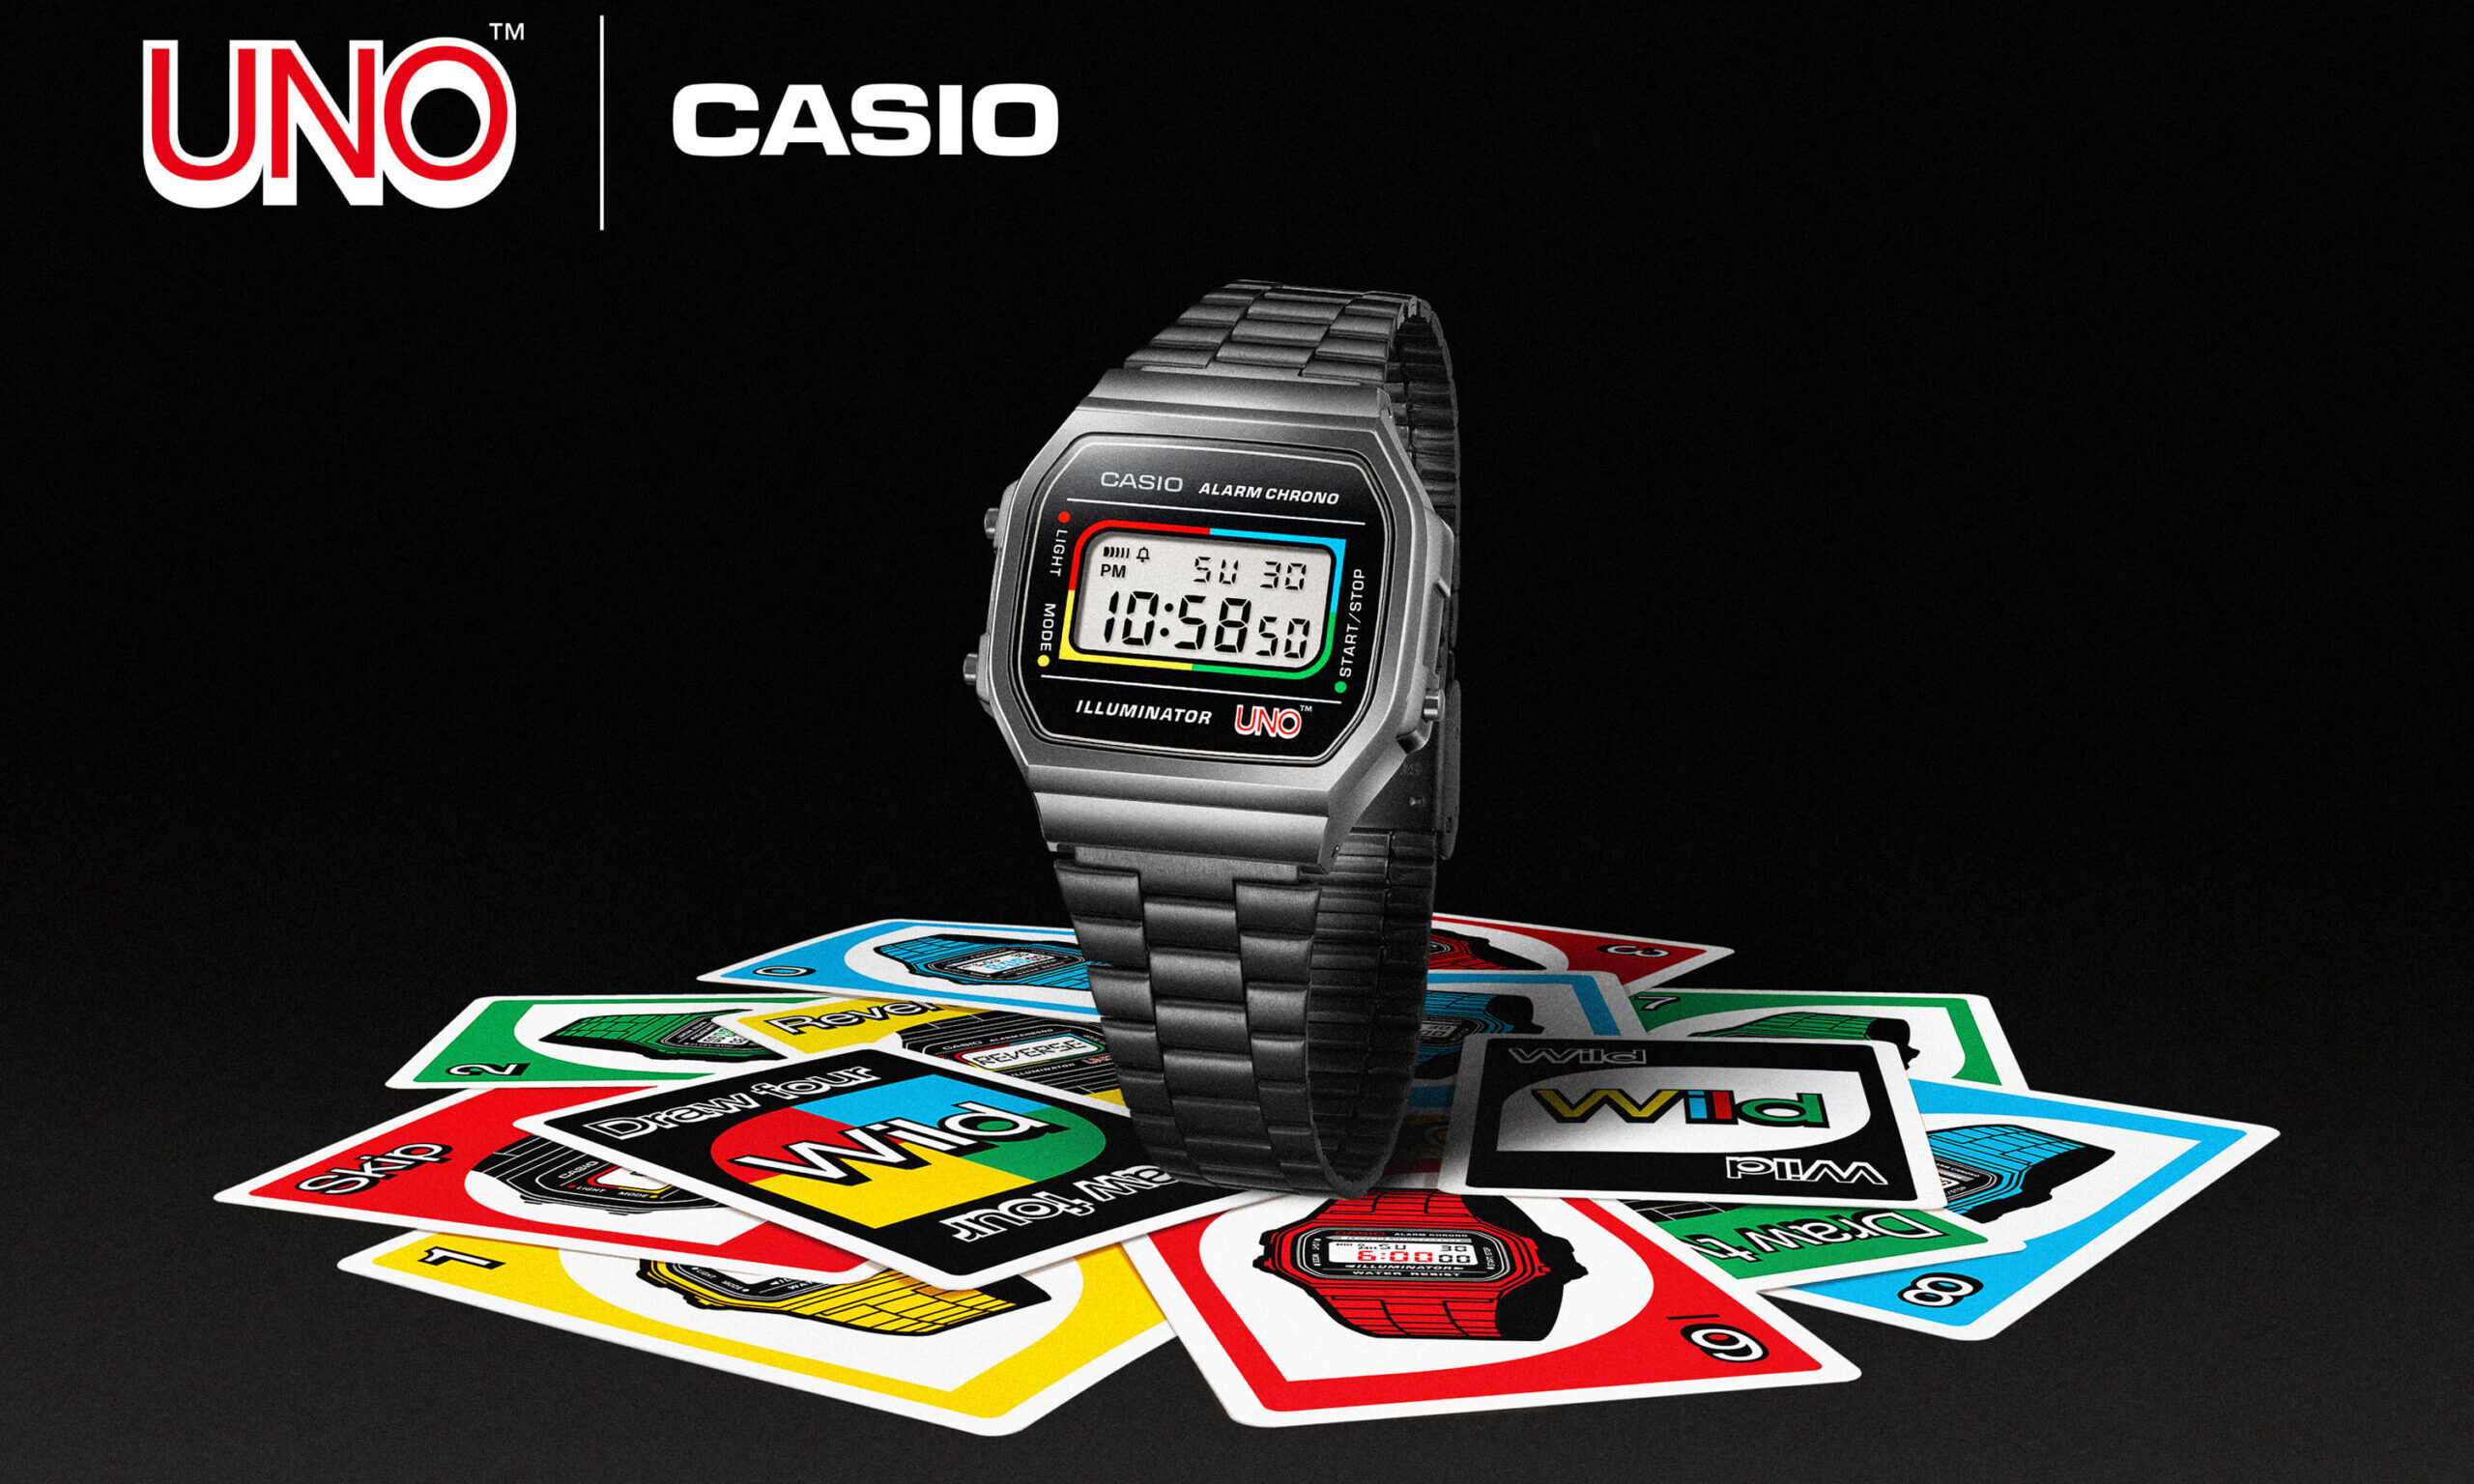 CASIO CLASSIC、カードゲーム「UNO」とのコラボウォッチを発売